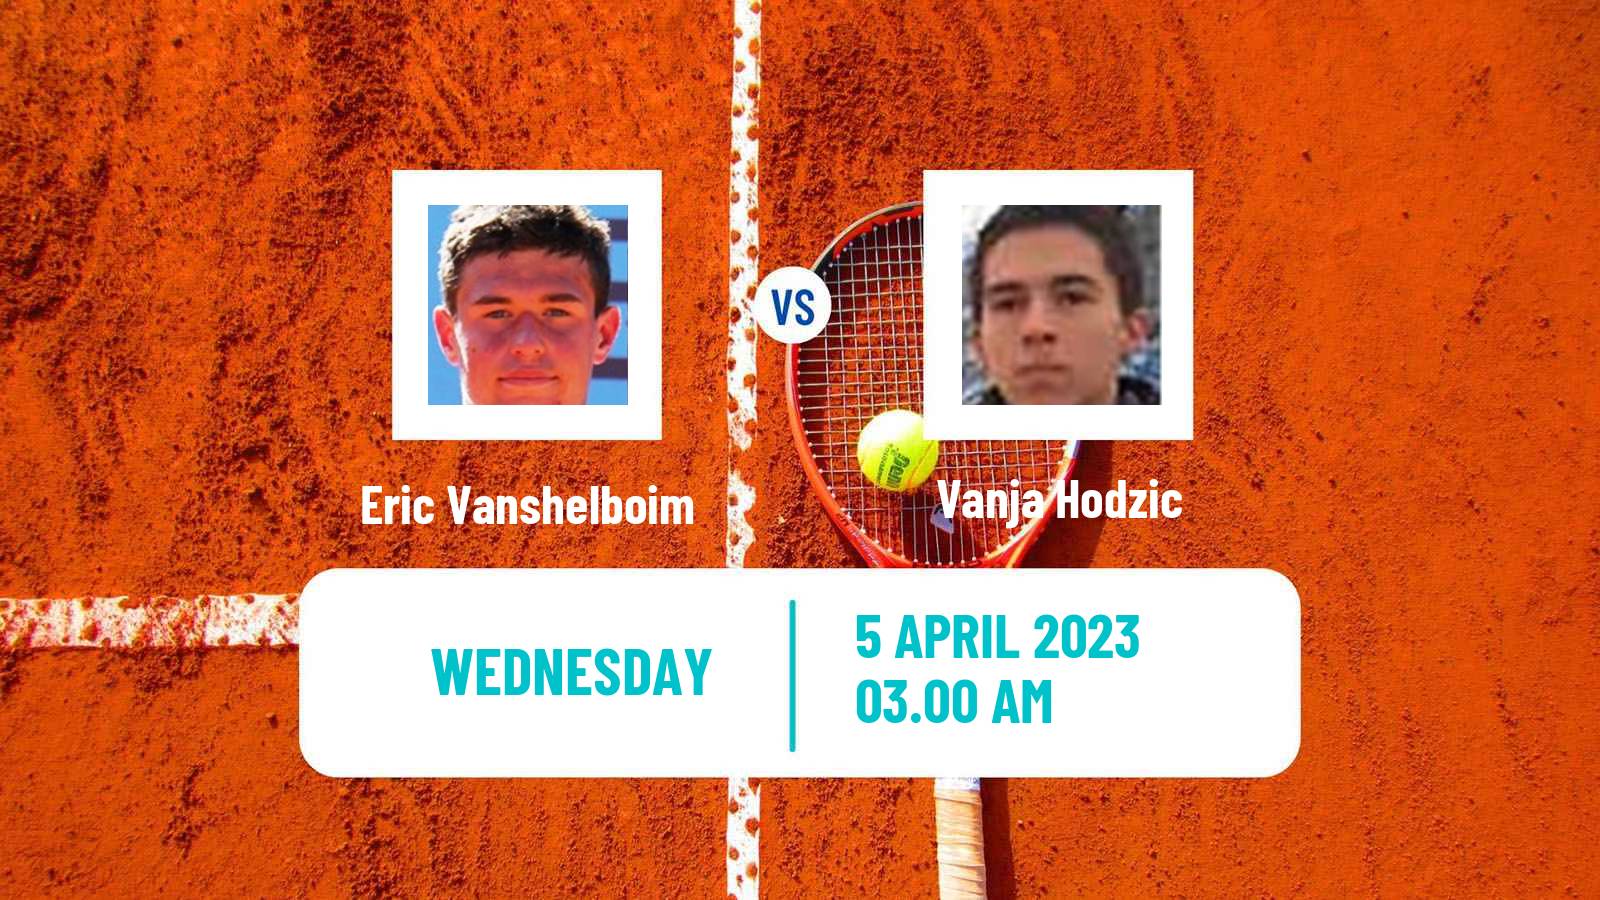 Tennis ITF Tournaments Eric Vanshelboim - Vanja Hodzic